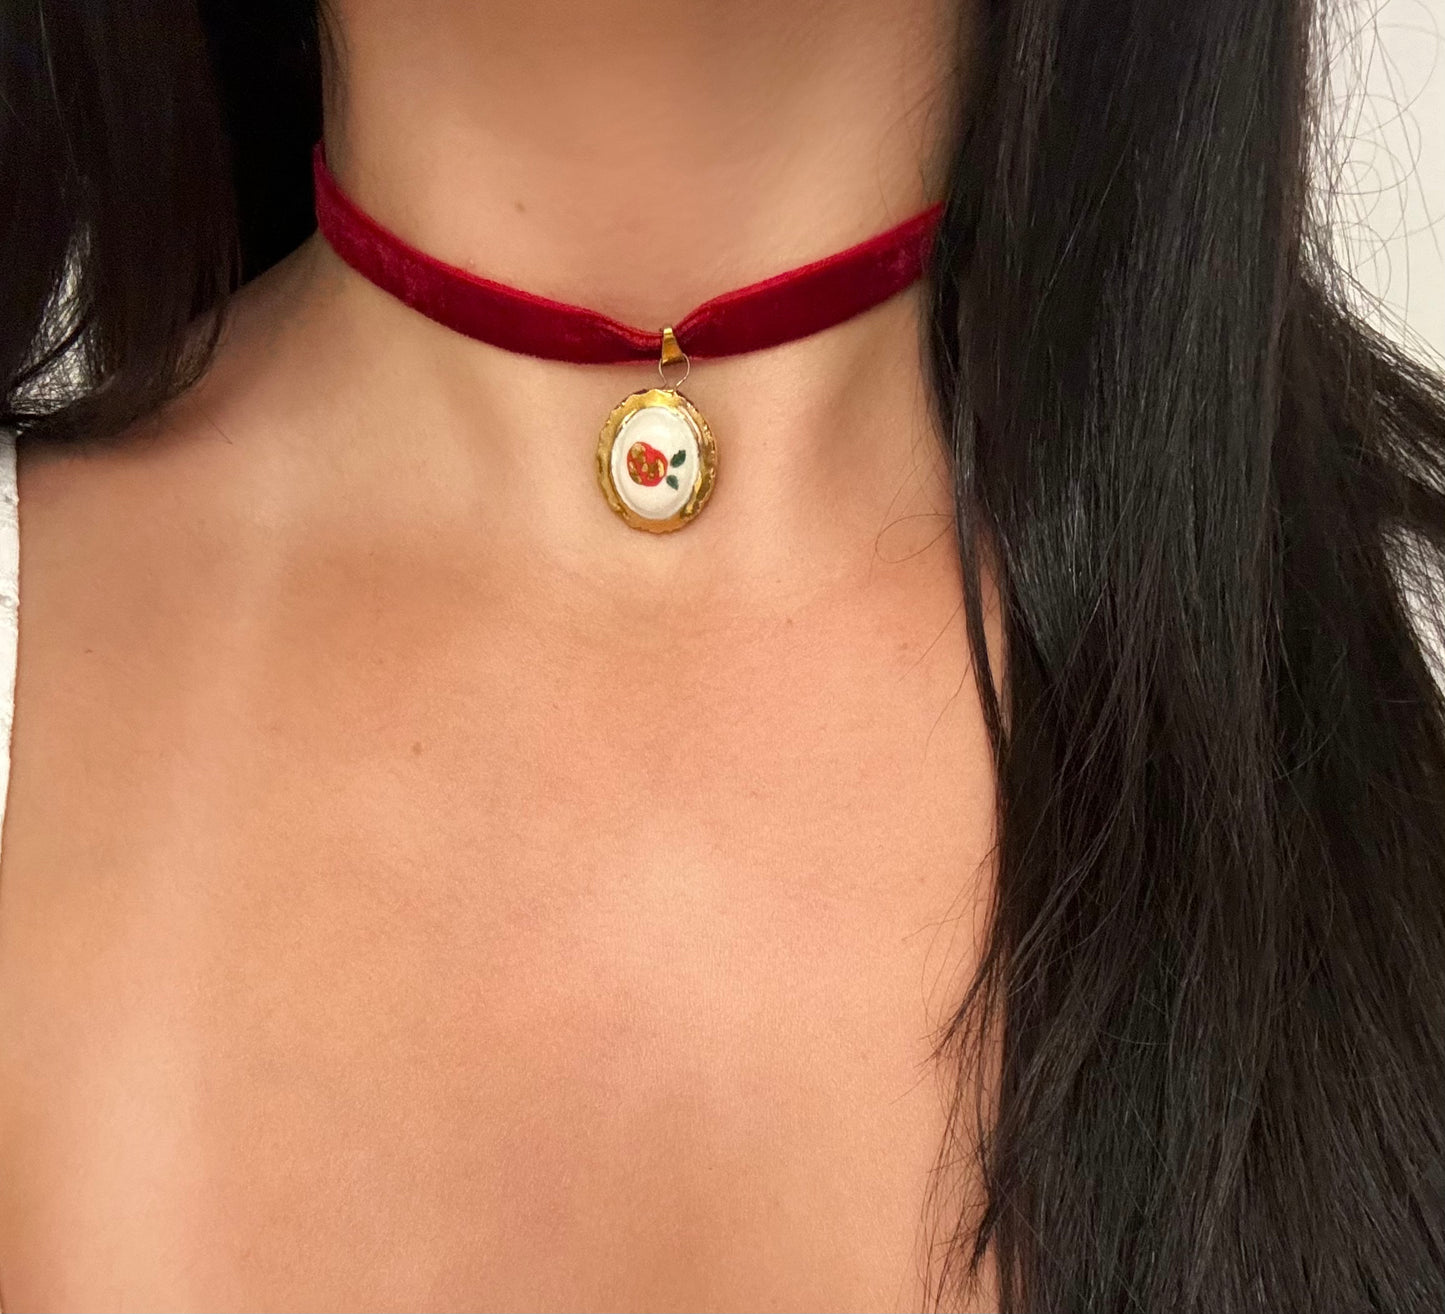 enchanted rose necklace | 22k gold lustre